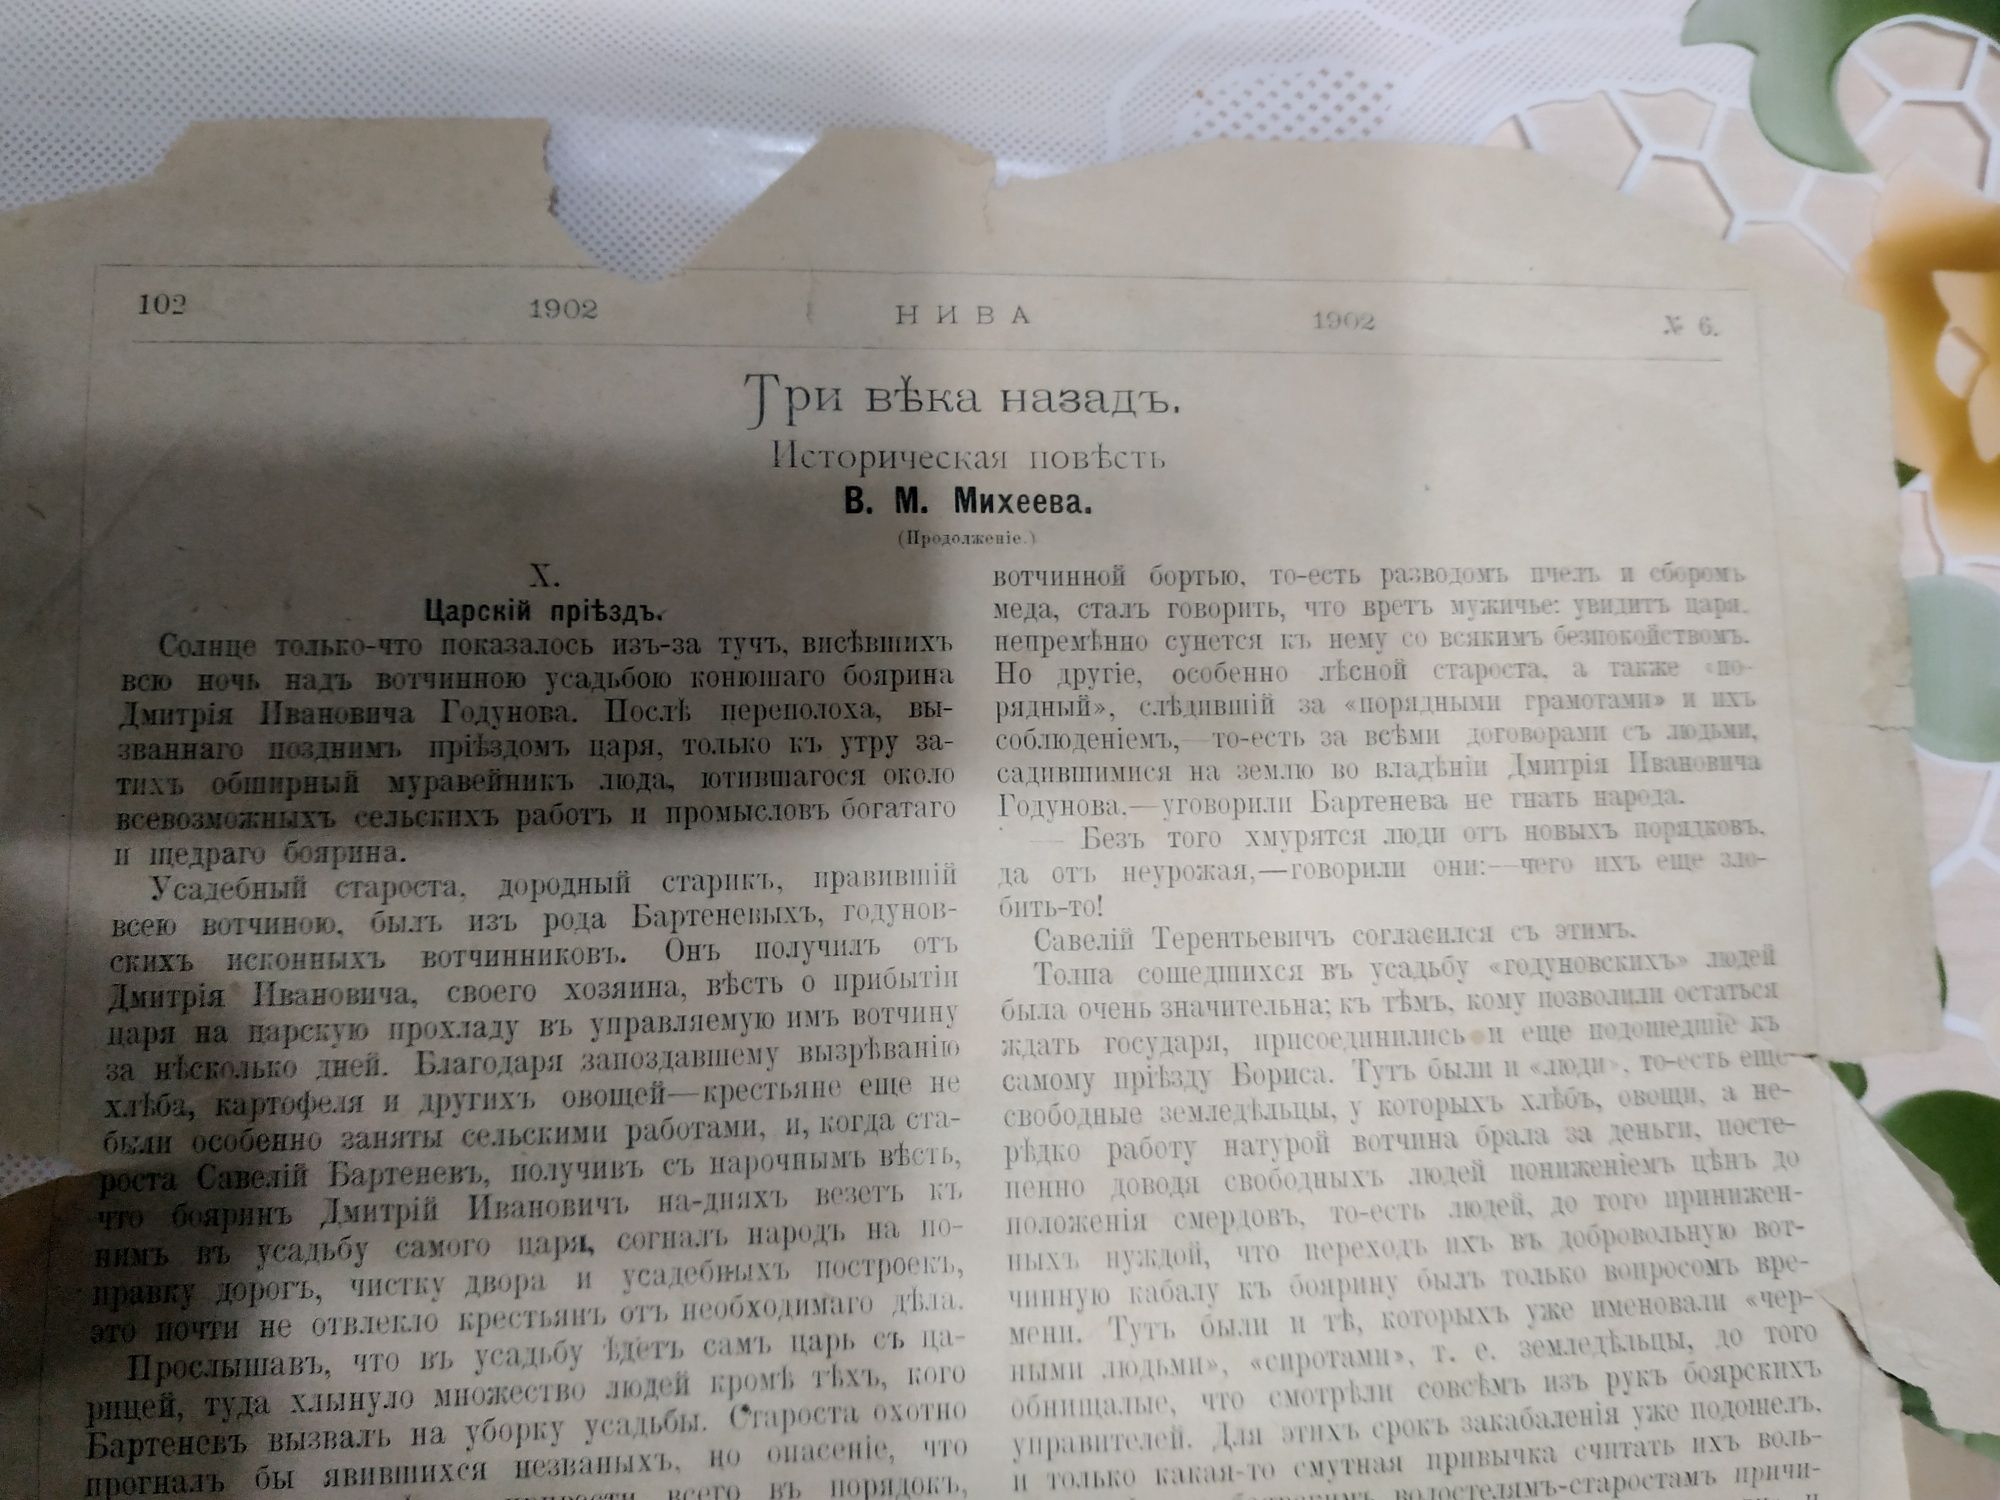 Старинная газета 1902 года.